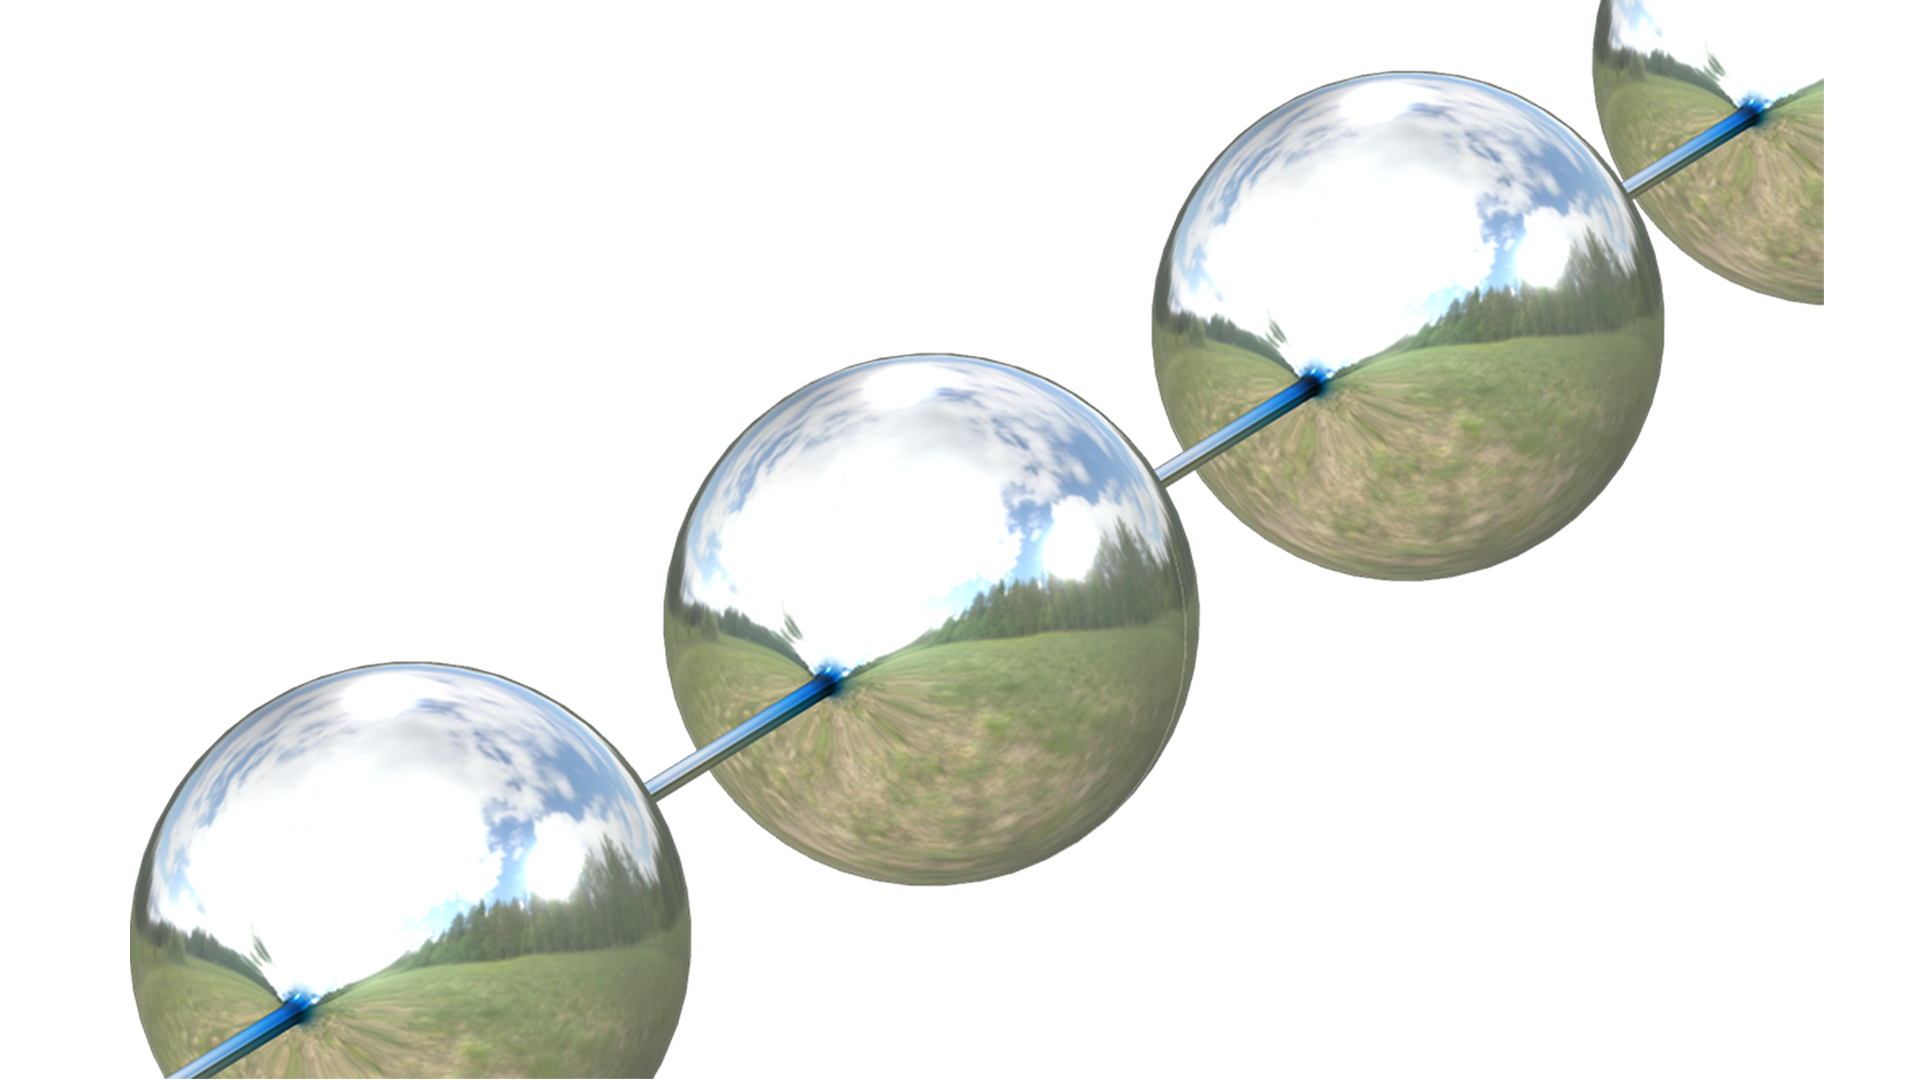 Кадрированное изображение модели утончения вязкоупругой нити, на котором показаны четыре сферических капли, соединенных утончающимися нитями. Для визуализации используется металлическая текстура, в которой отражаются небо, деревья и луг.